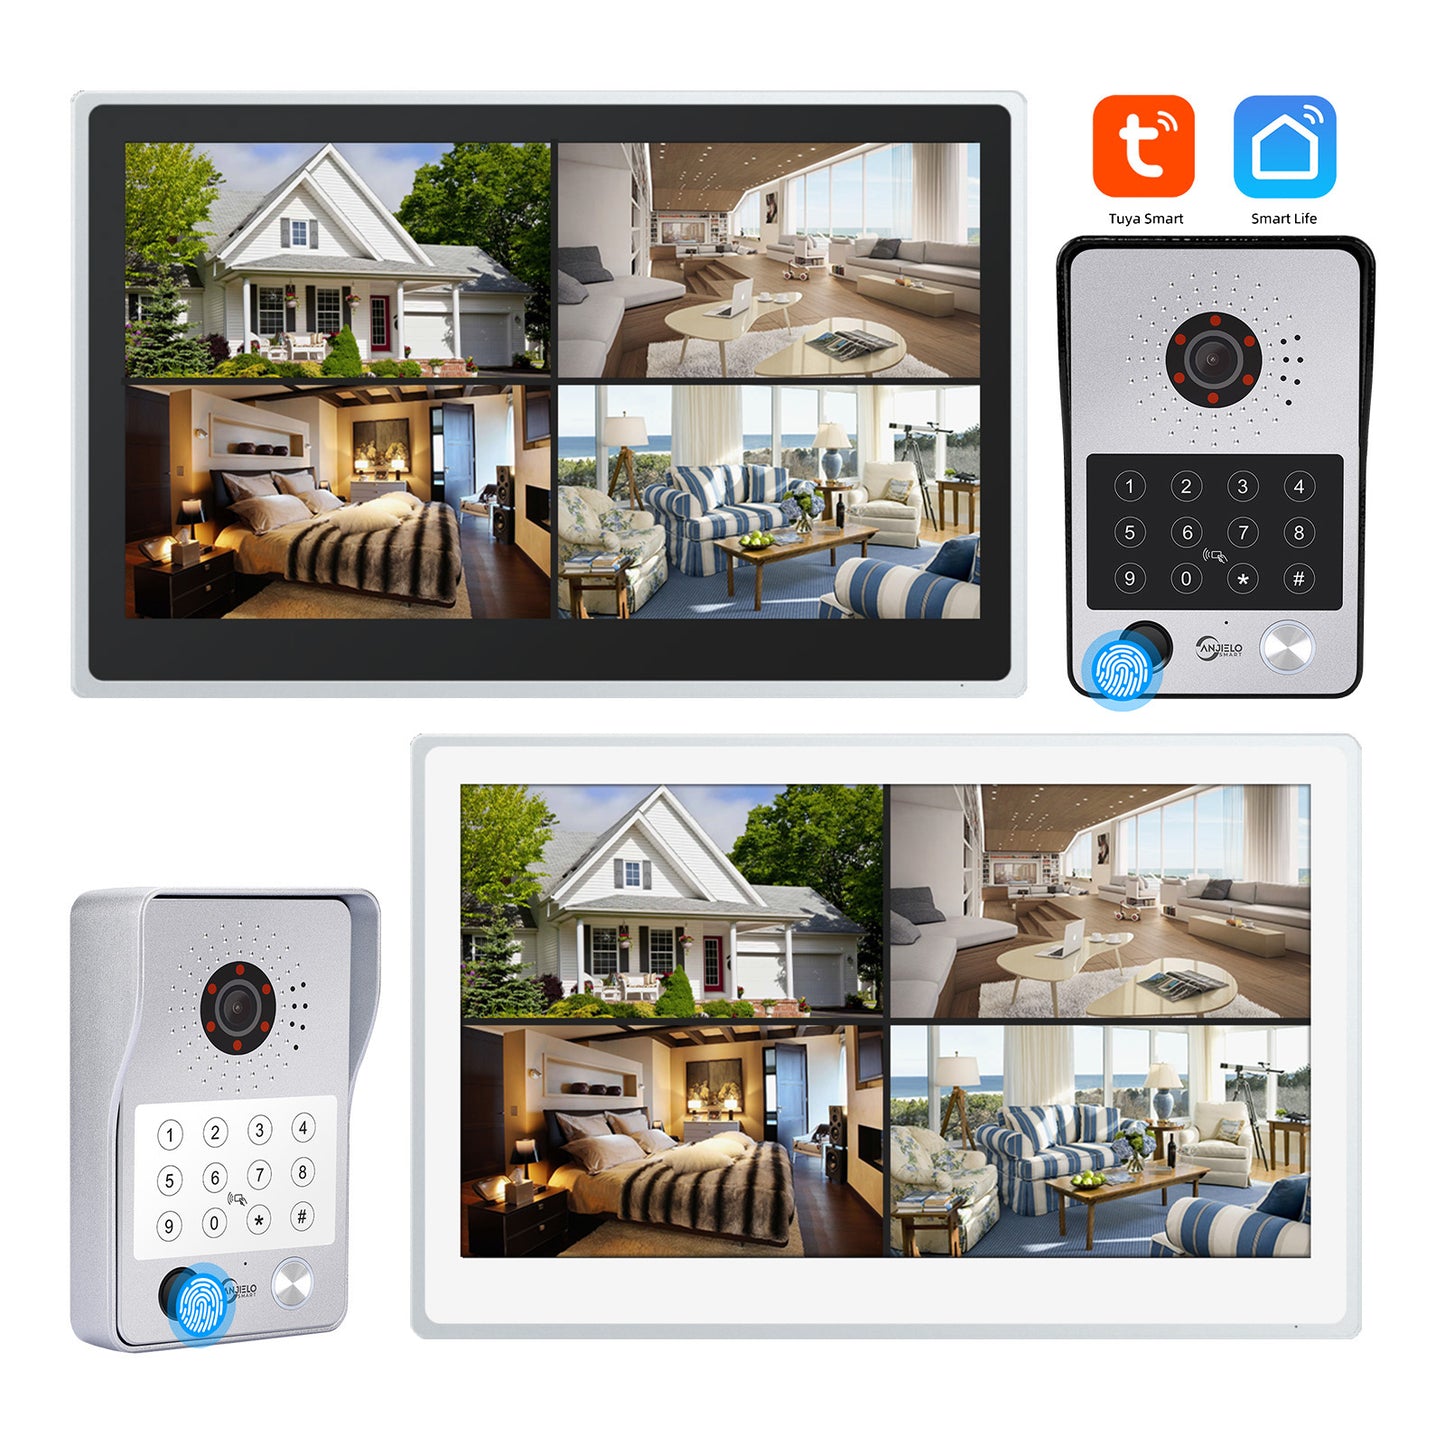 New 2024 Tuya iDVR 1080P Smart Home Doorbell Big 15.6 Inch Video Intercom Control System WiFi Video 4 Split Screen IP Doorbell